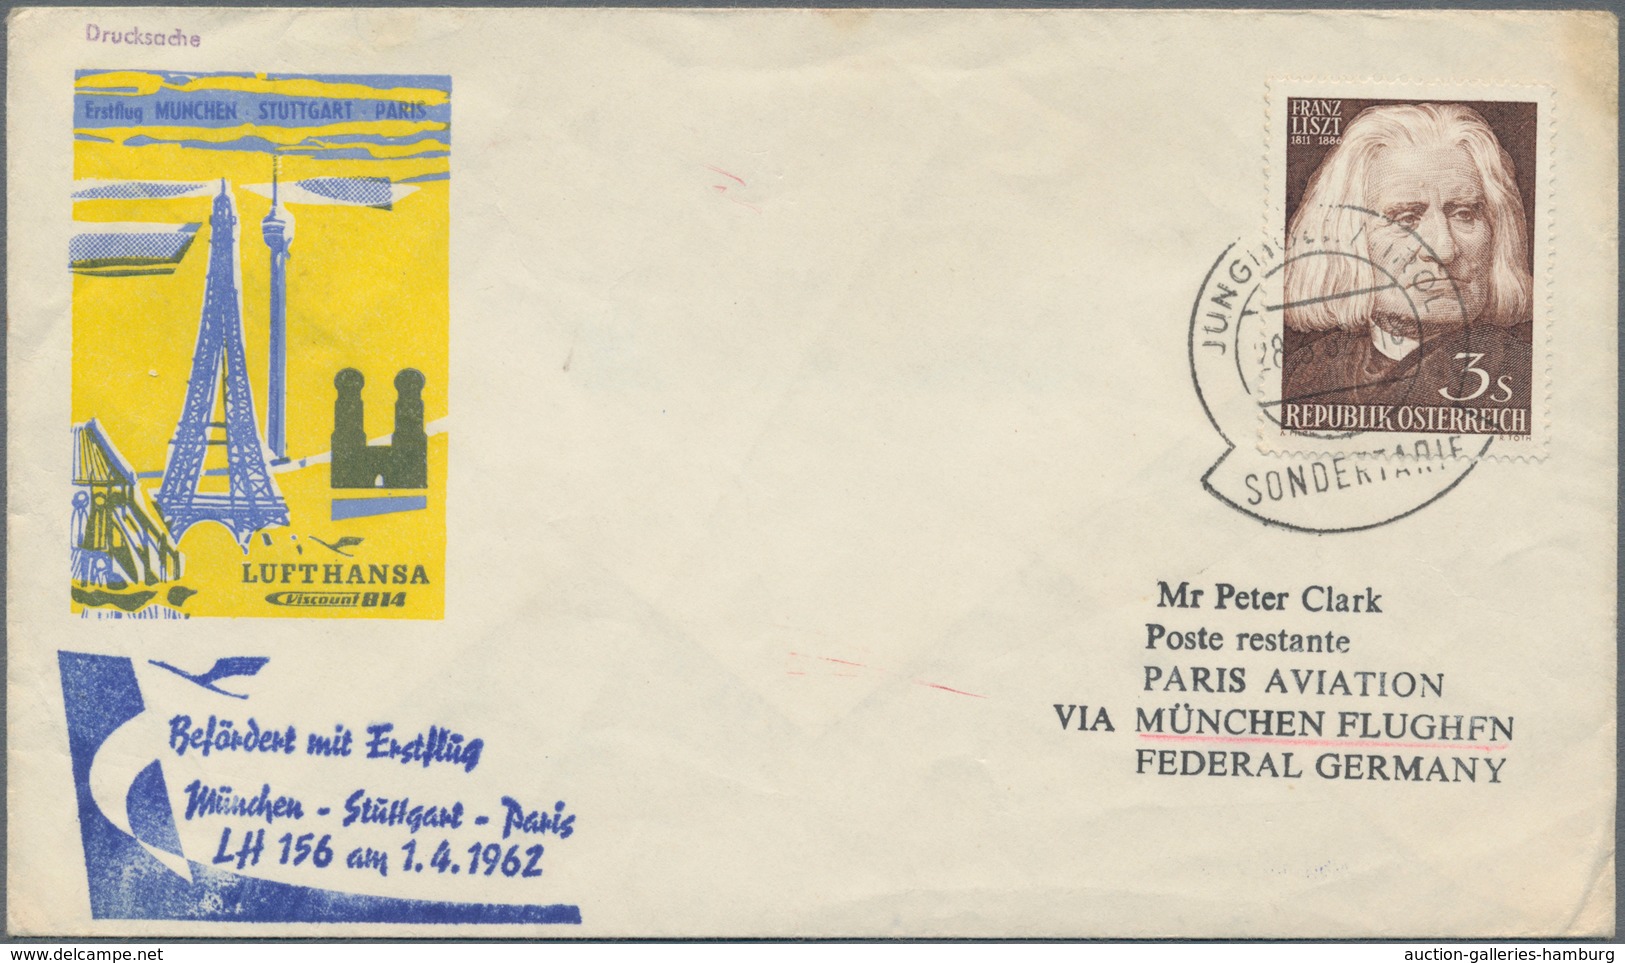 Österreich - Besonderheiten: 1962/1966, 5 Luftpost-Briefe aus Hirschegg und Jungholz (Zolllanschlußg